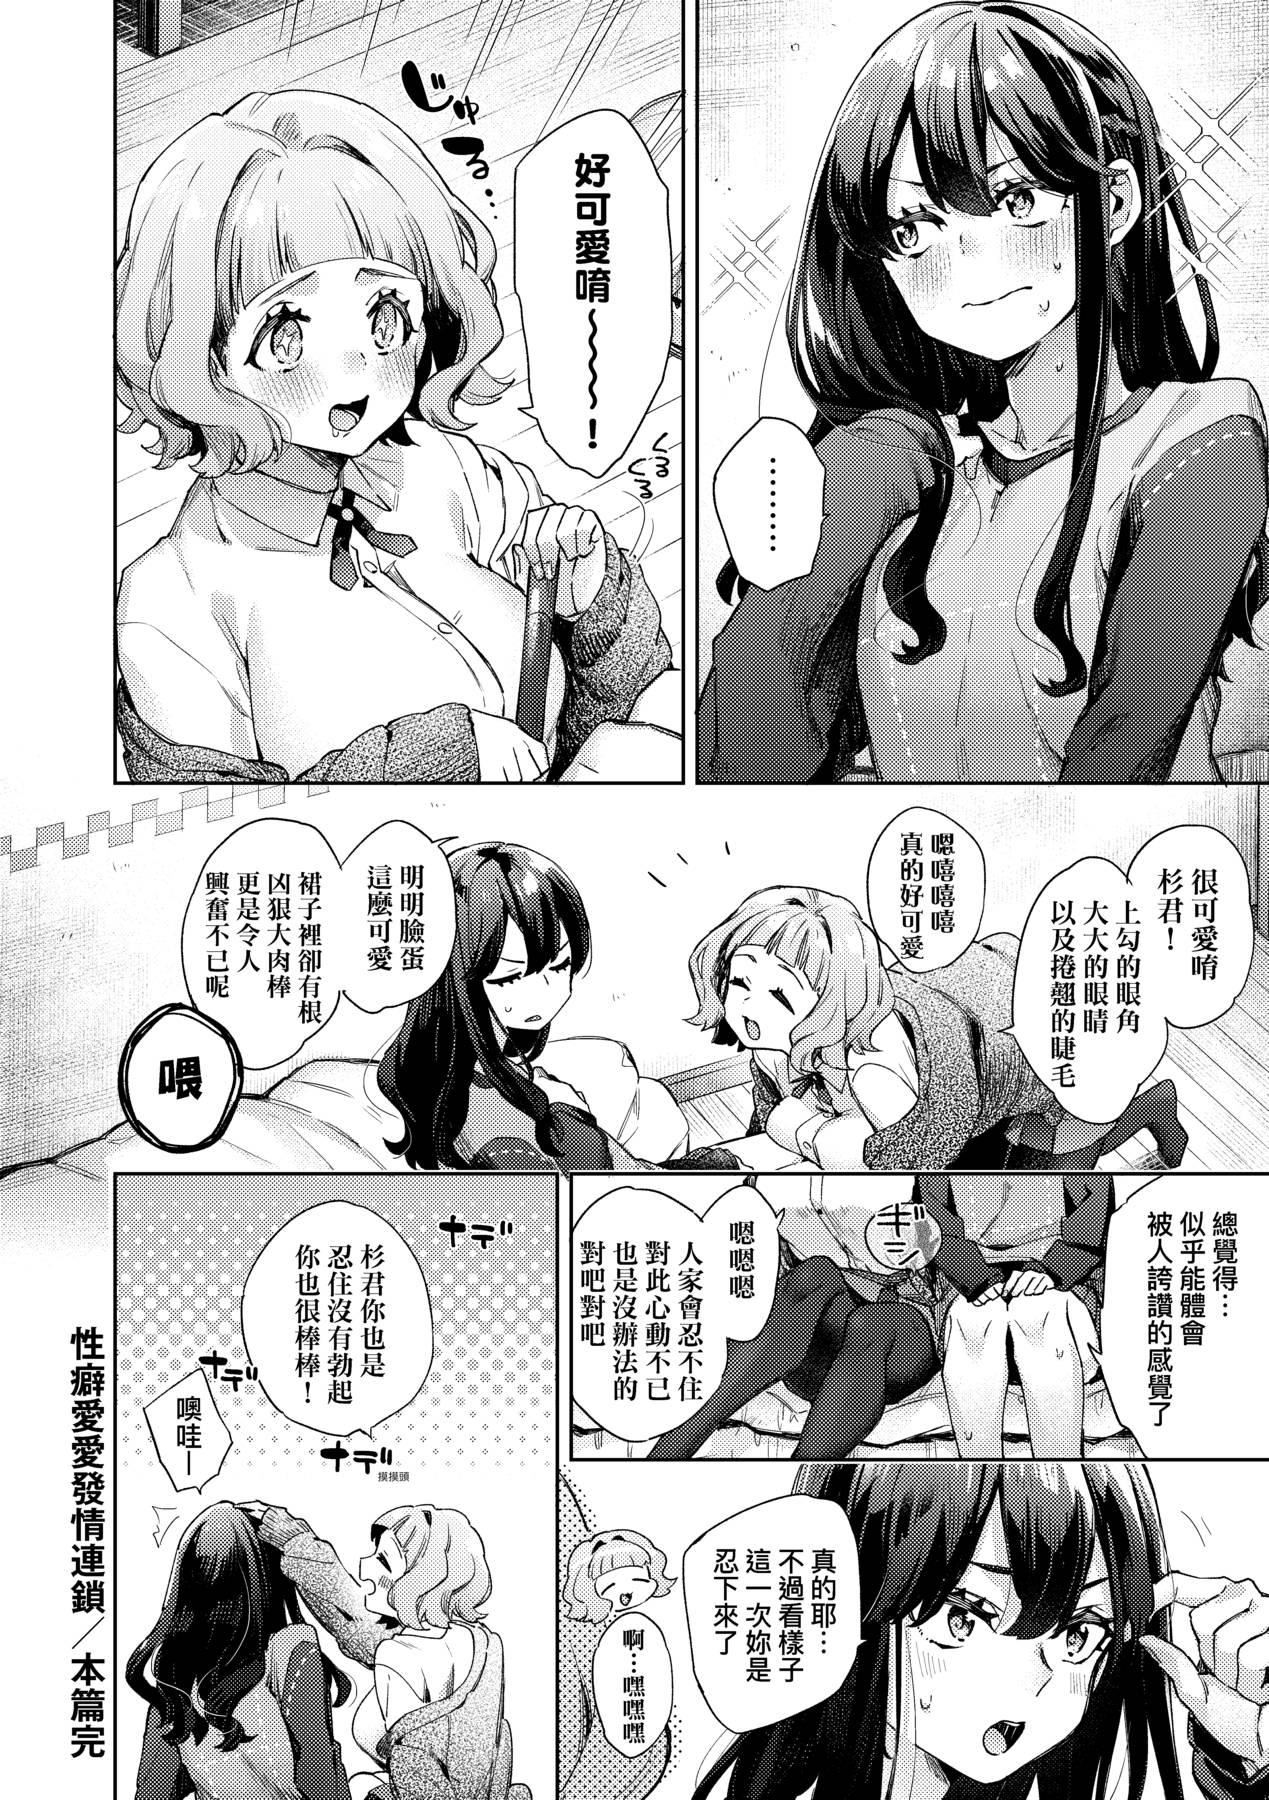 [未來數位中文版] [FDH-065] [冬みかん] 女子校生が制服姿でえっちなことをしているようです!27.jpg